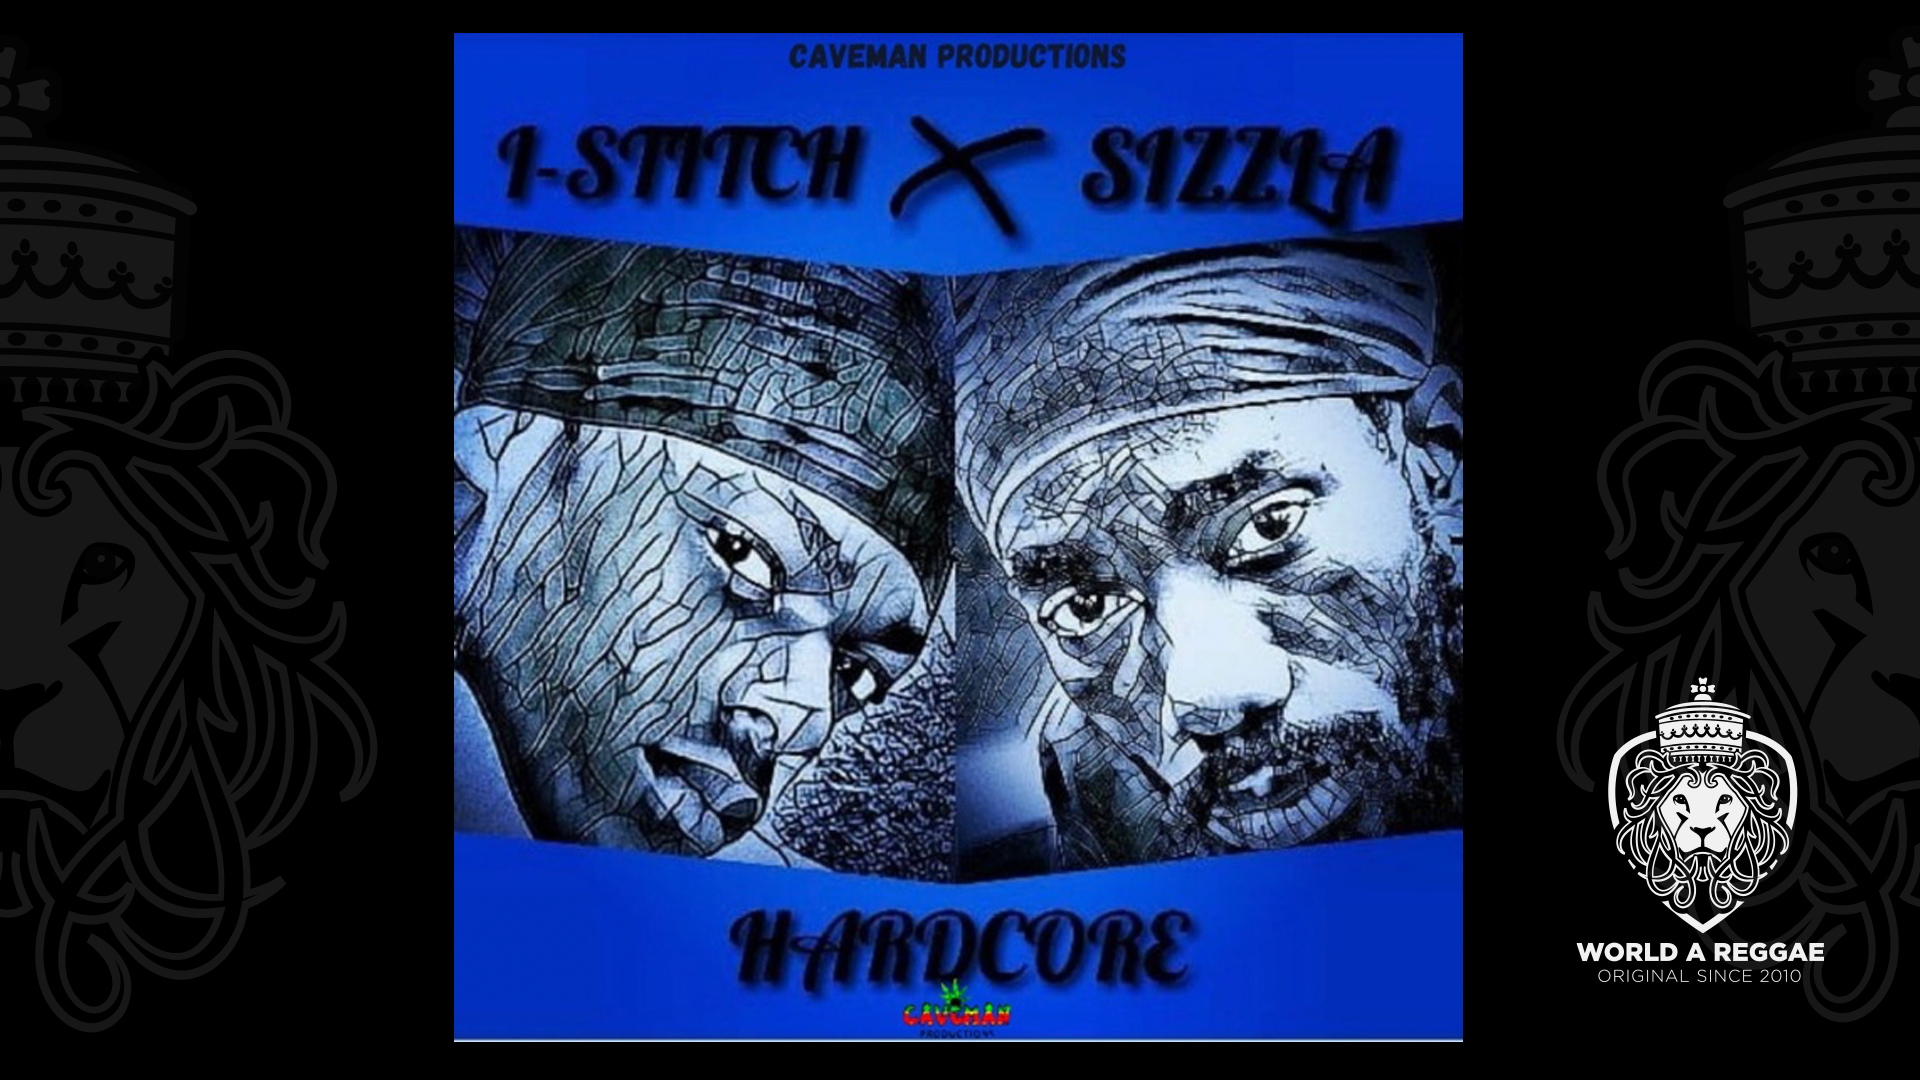 Hardcore - Single I-Stitch